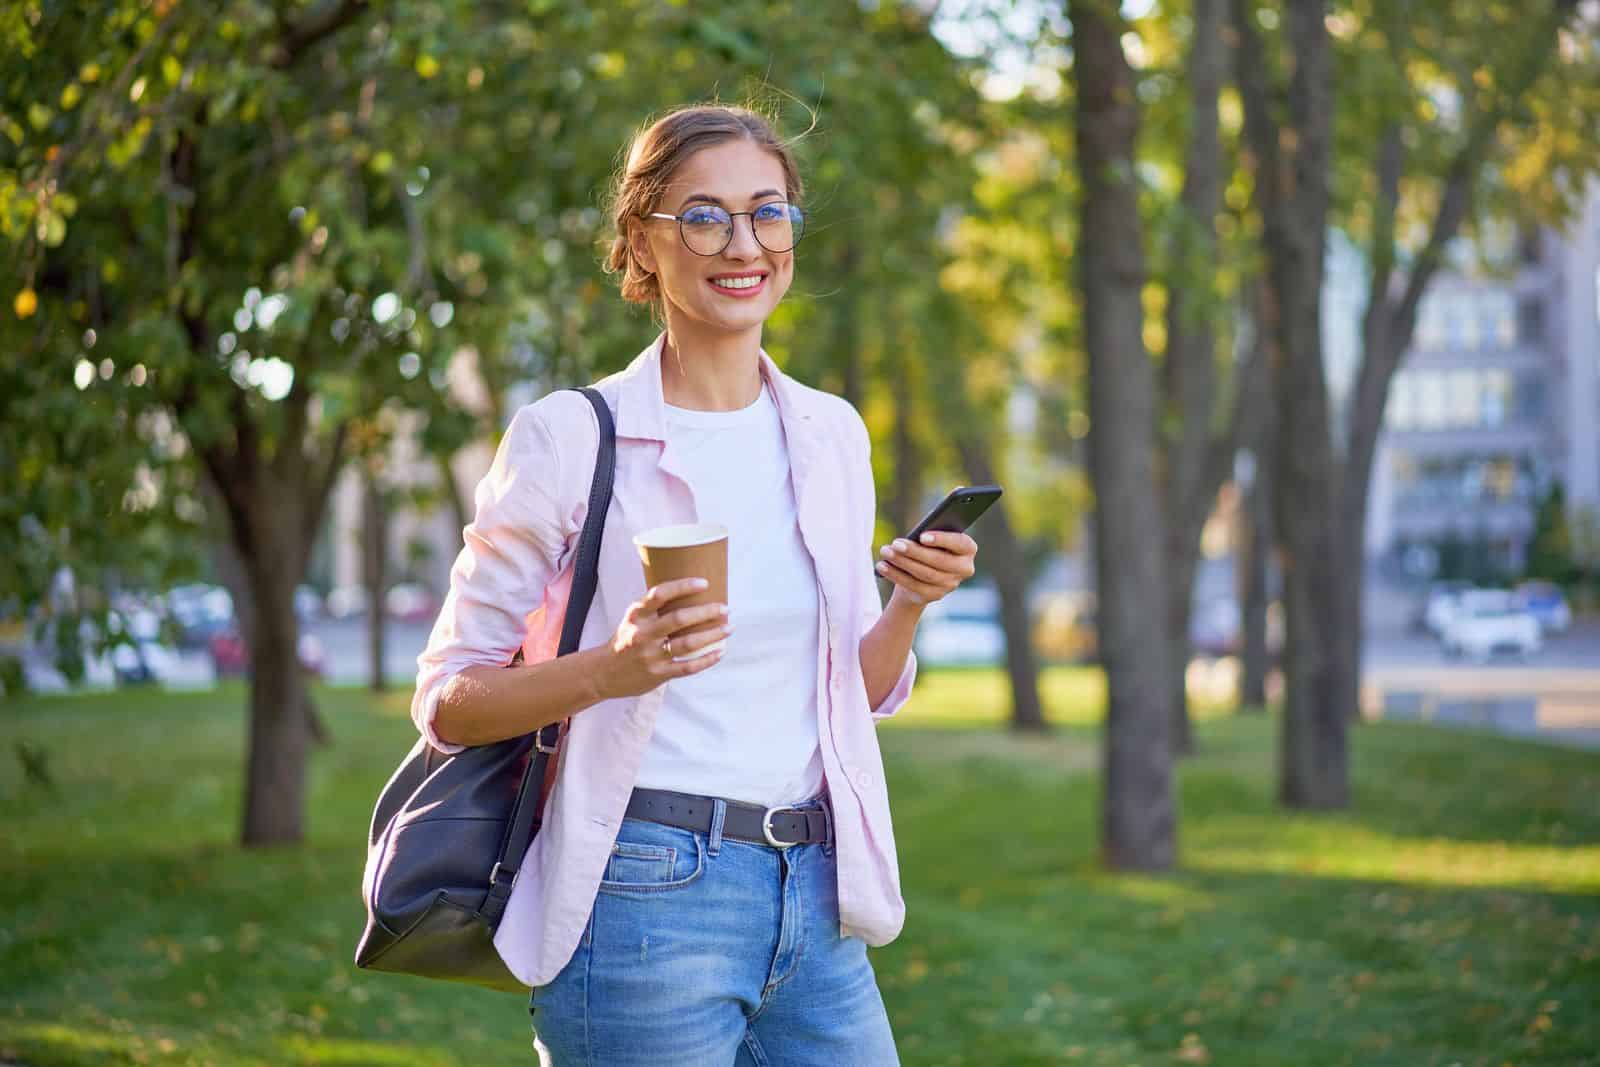 Una mujer joven sosteniendo una taza de café y un teléfono celular en el parque.